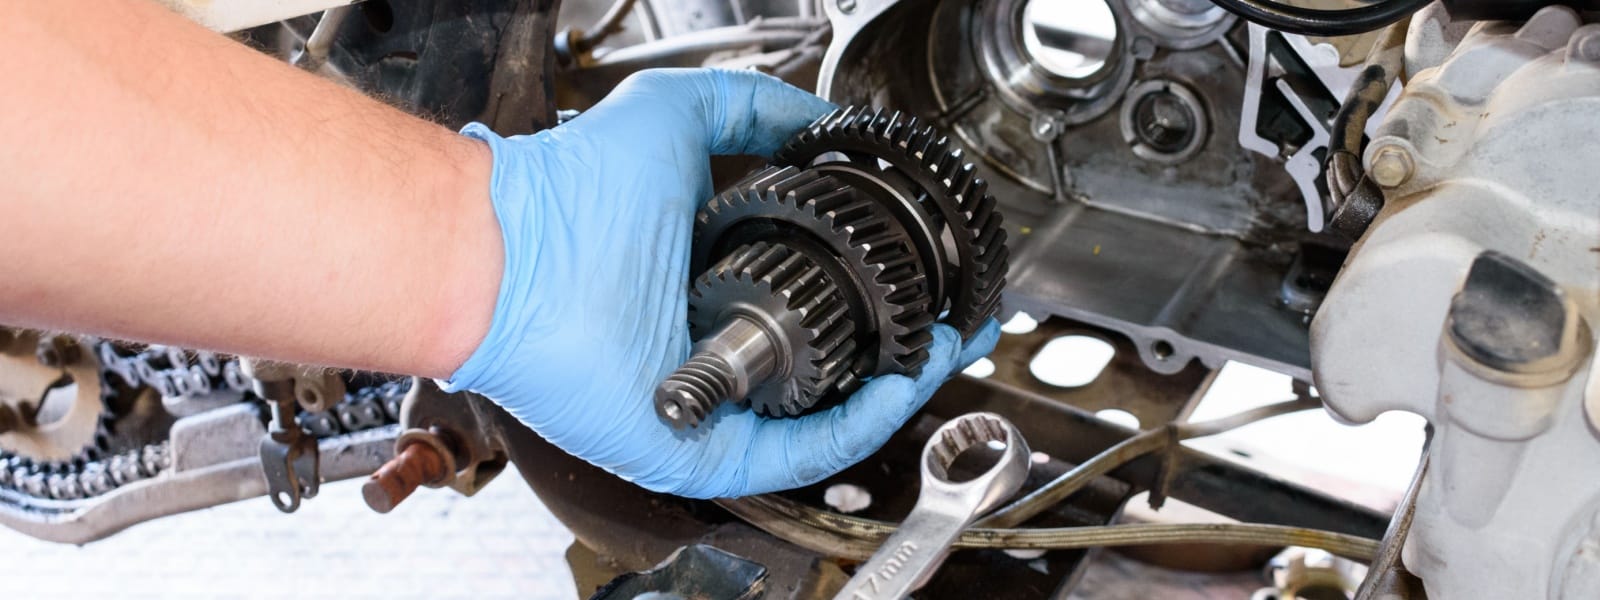 ATV Maintenance & Repair